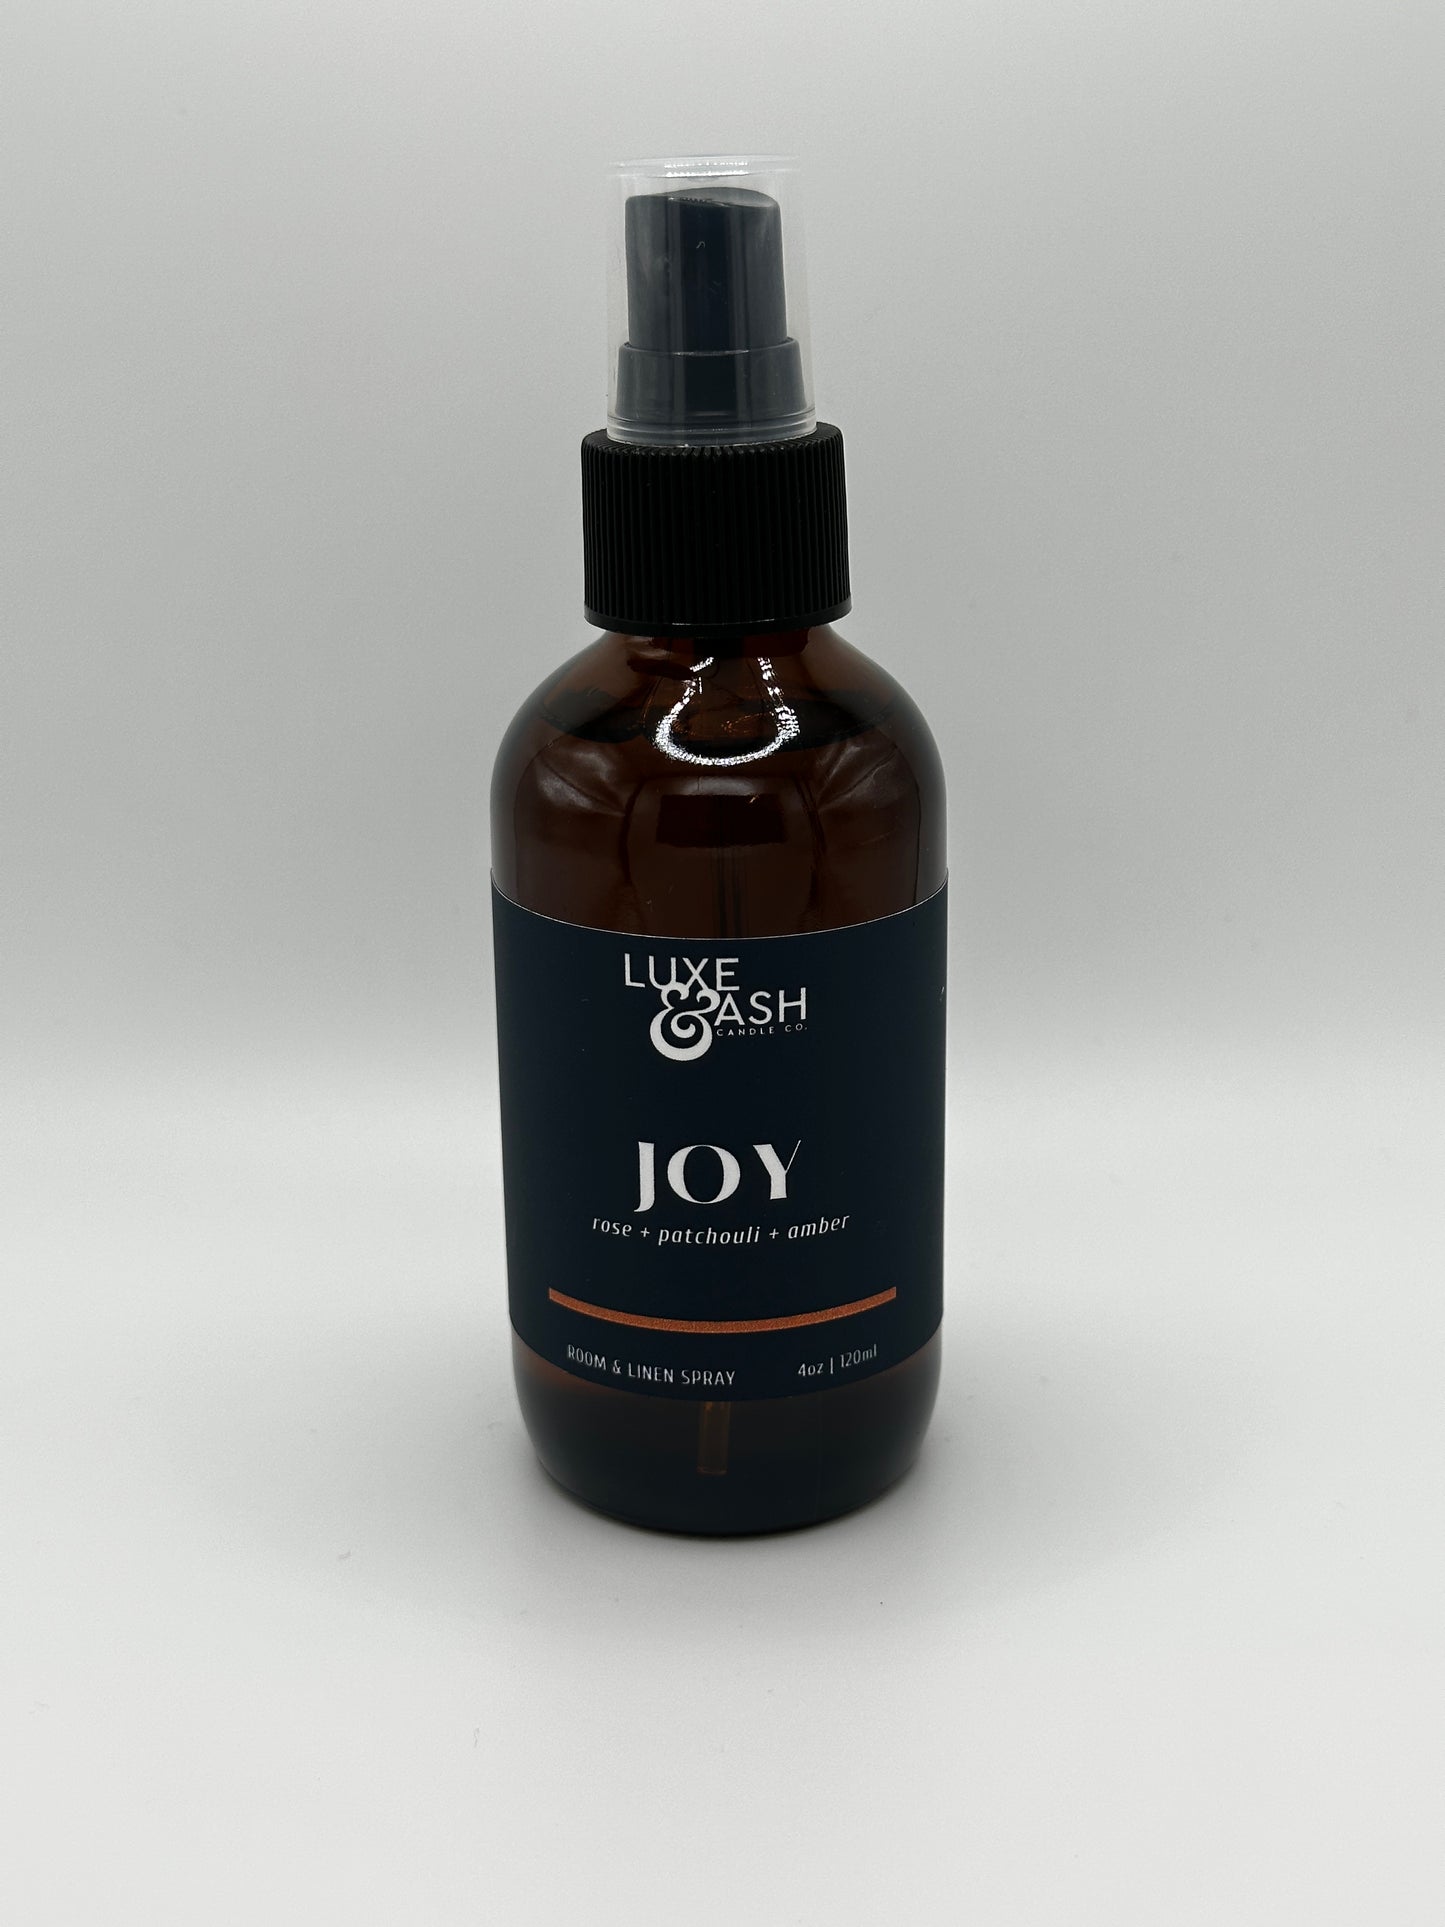 JOY Room & Linen Spray